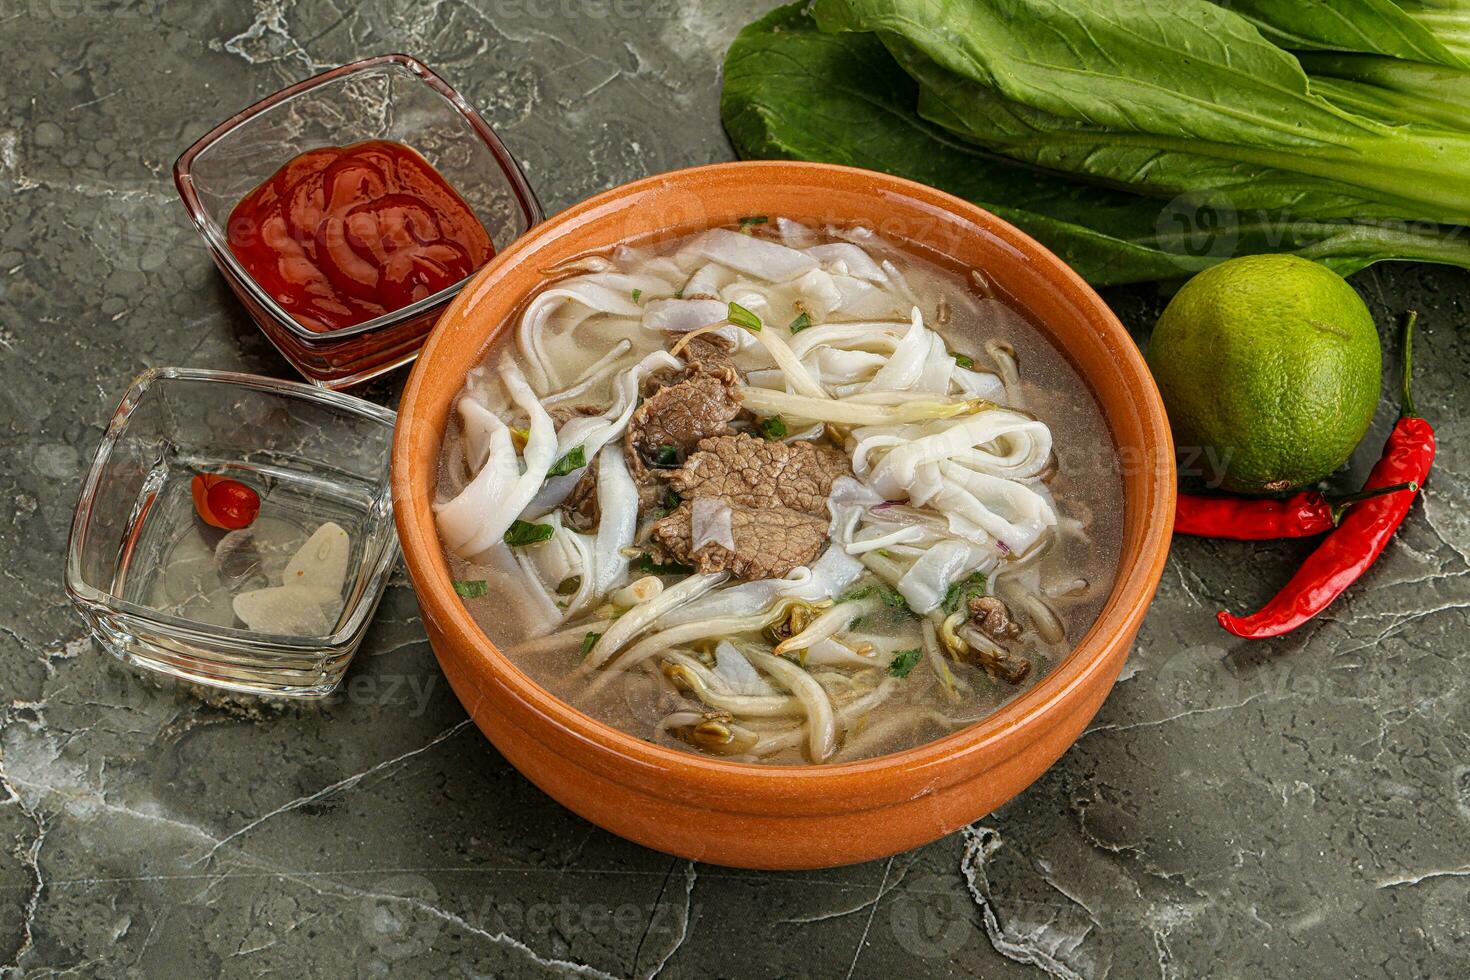 vietnamese soppa pho bo med nötkött foto